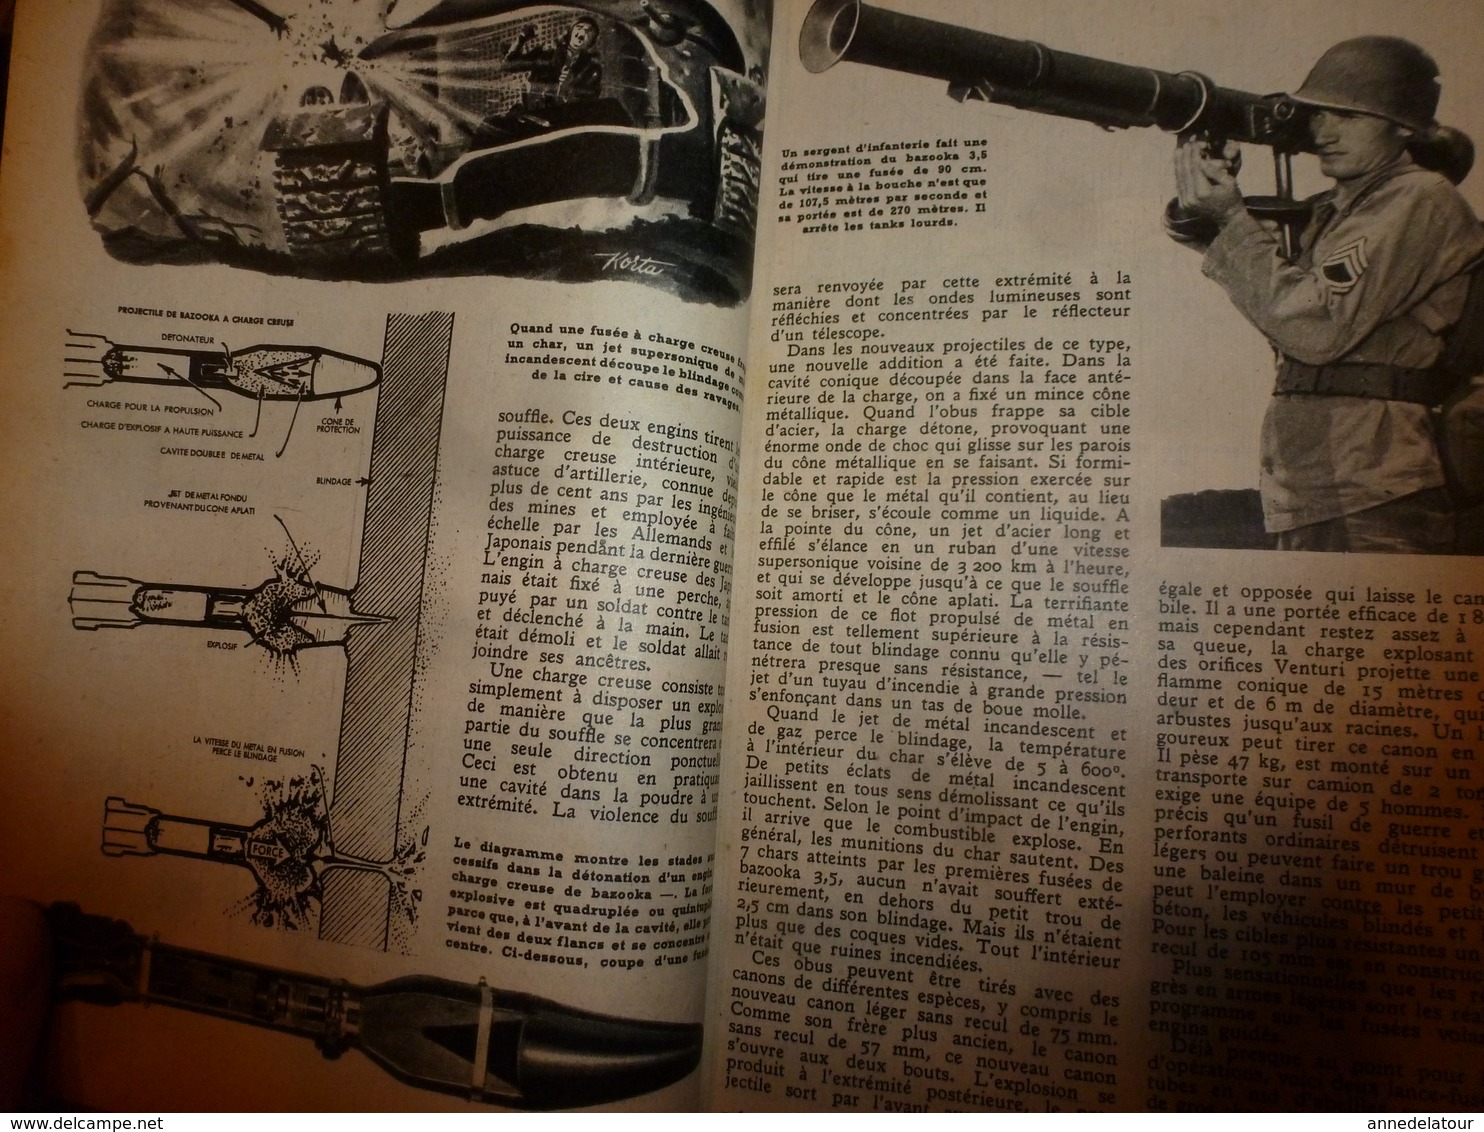 1951 MÉCANIQUE POPULAIRE:Faire une petite remorque d'enfant ;Hélicoptère à tout faire;Faire sa girouette de toit ; etc